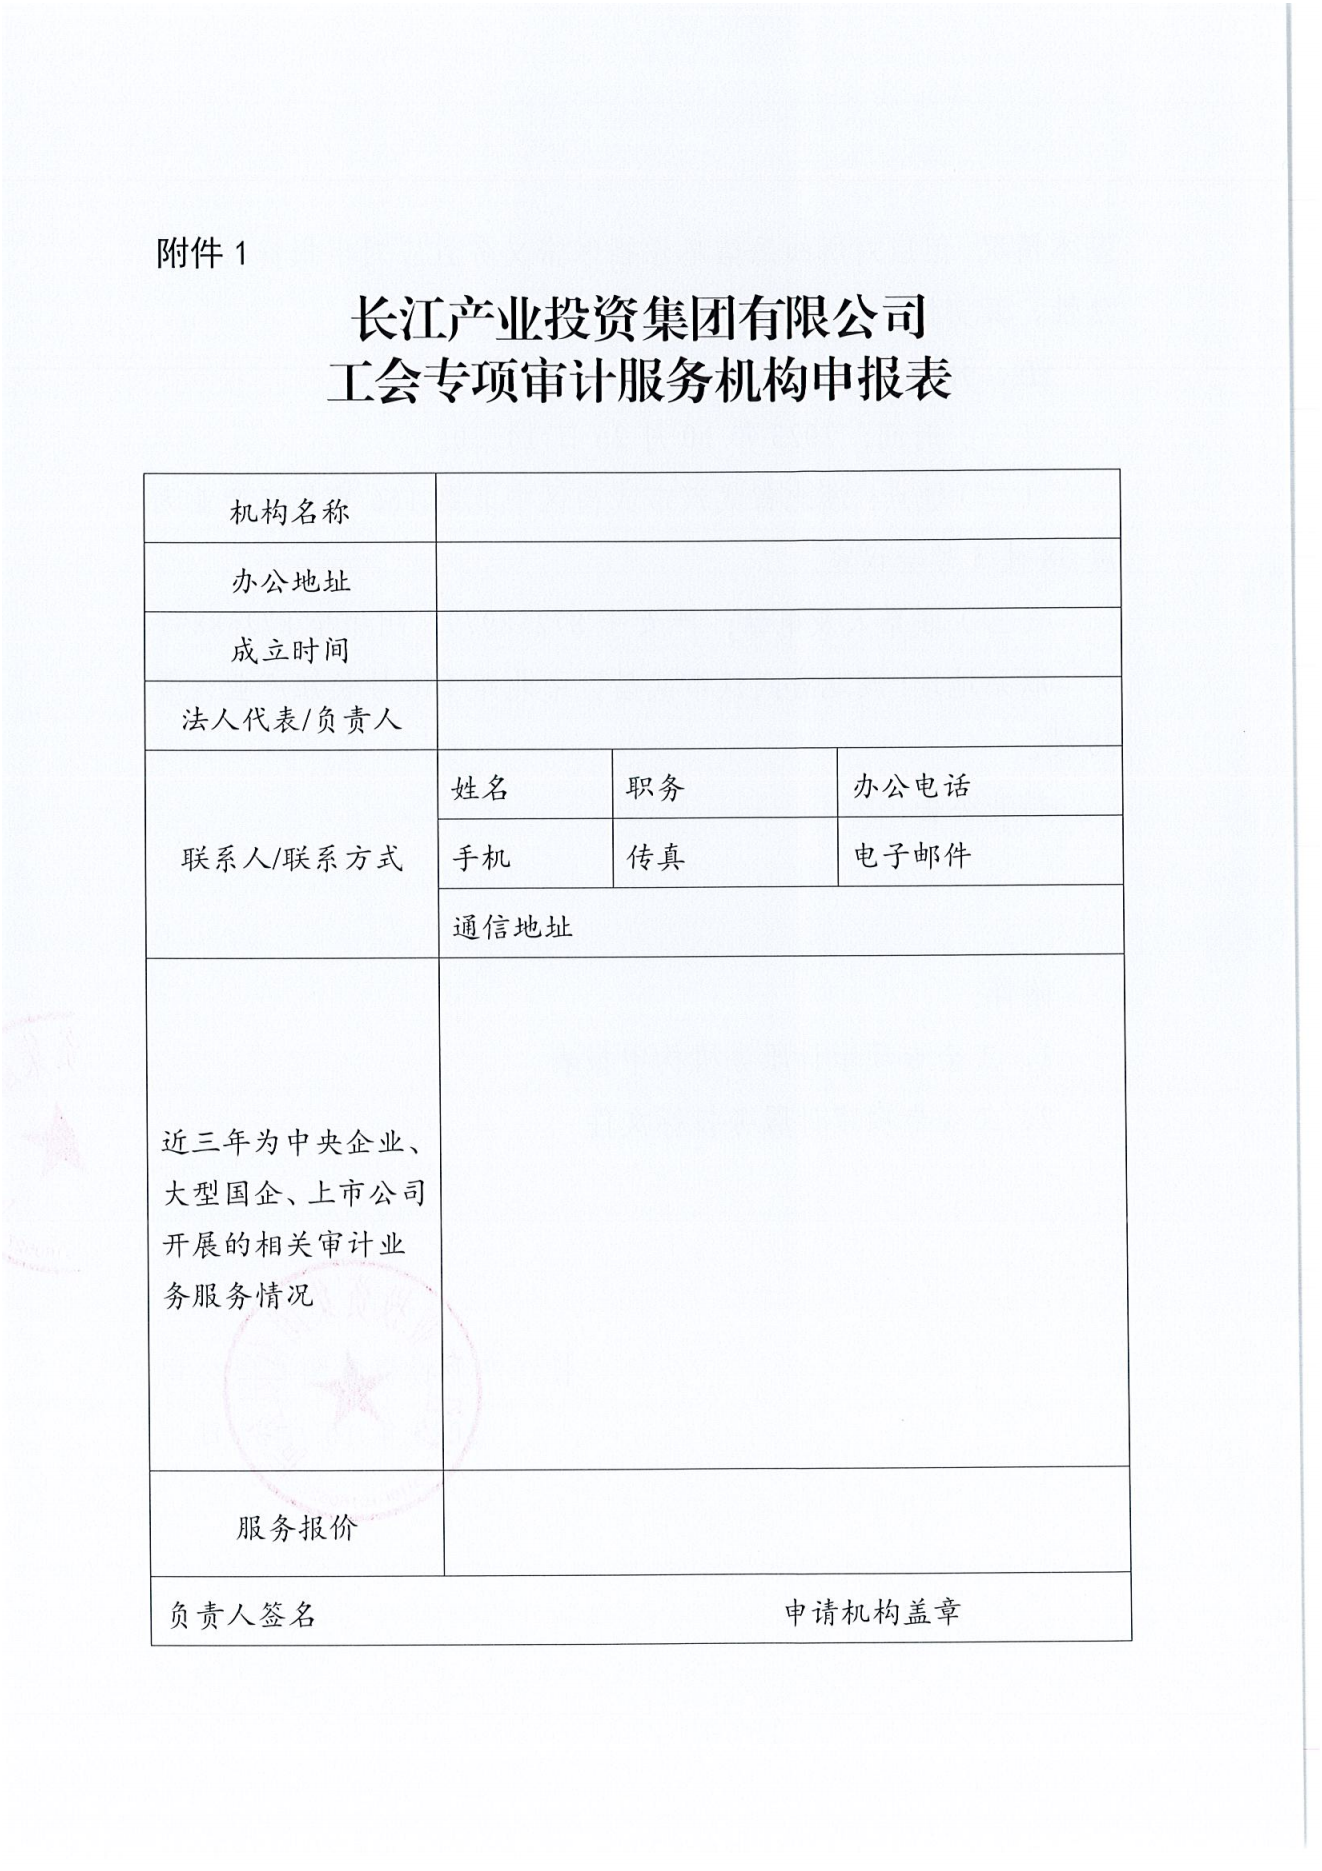 亚娱体育·(中国)官方网站工会专项审计项目竞争性磋商公告_03.png